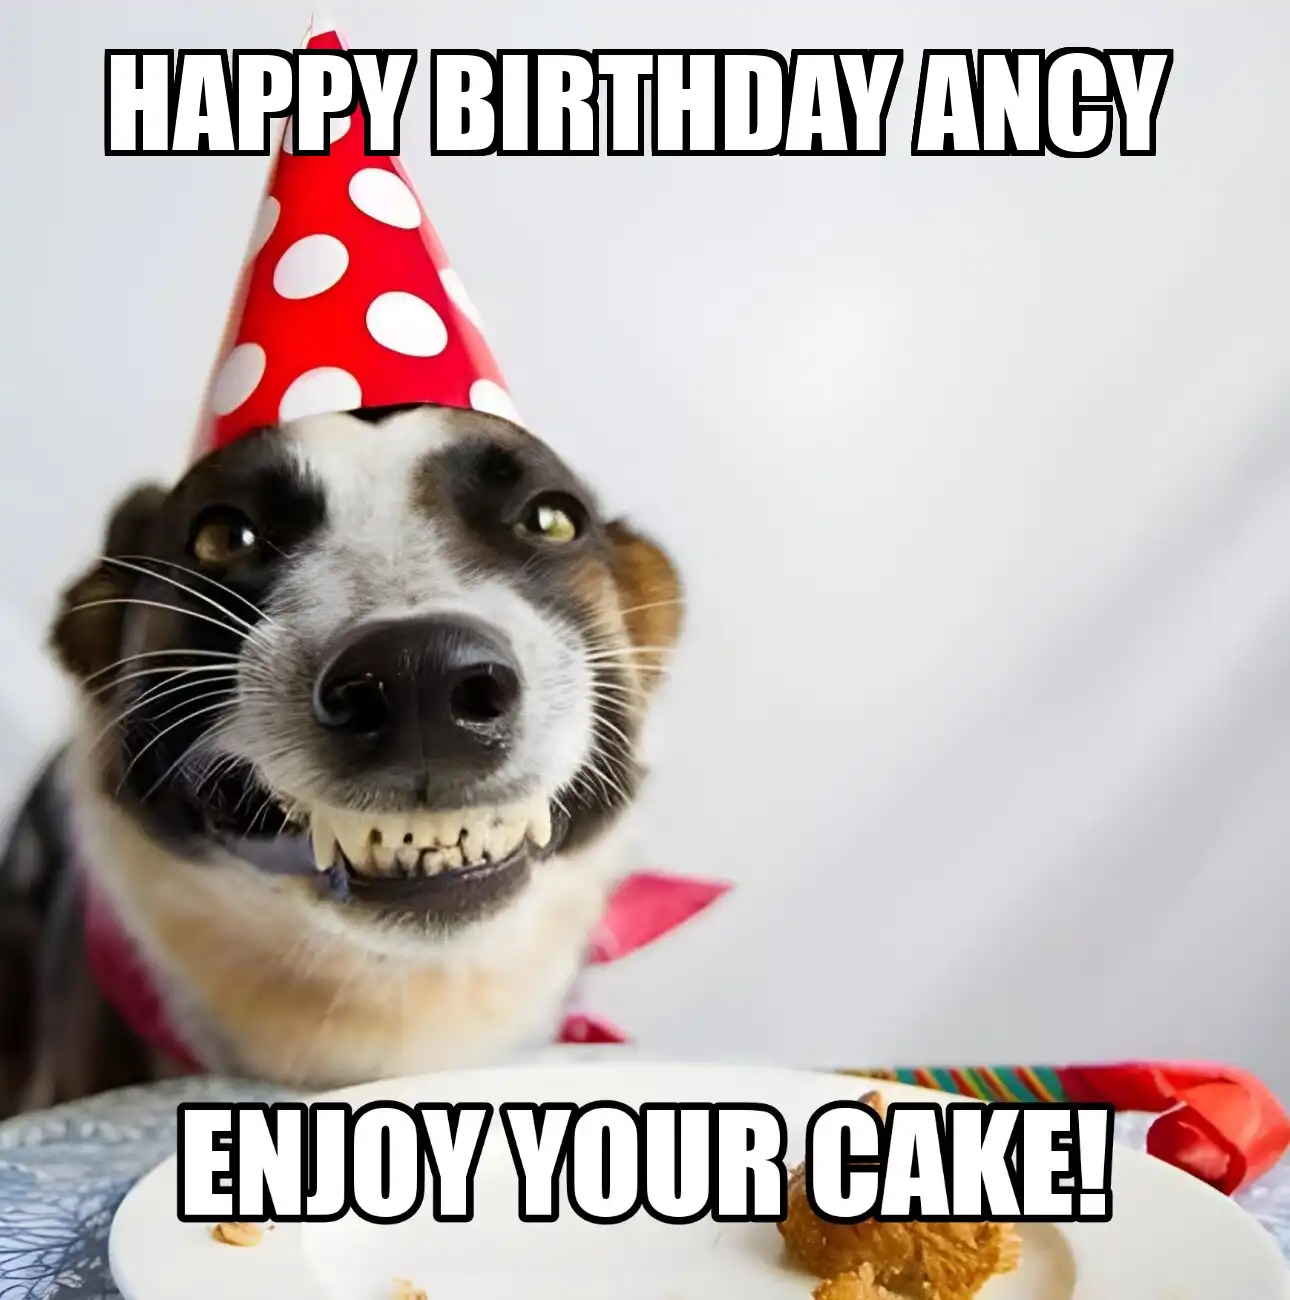 Happy Birthday Ancy Enjoy Your Cake Dog Meme